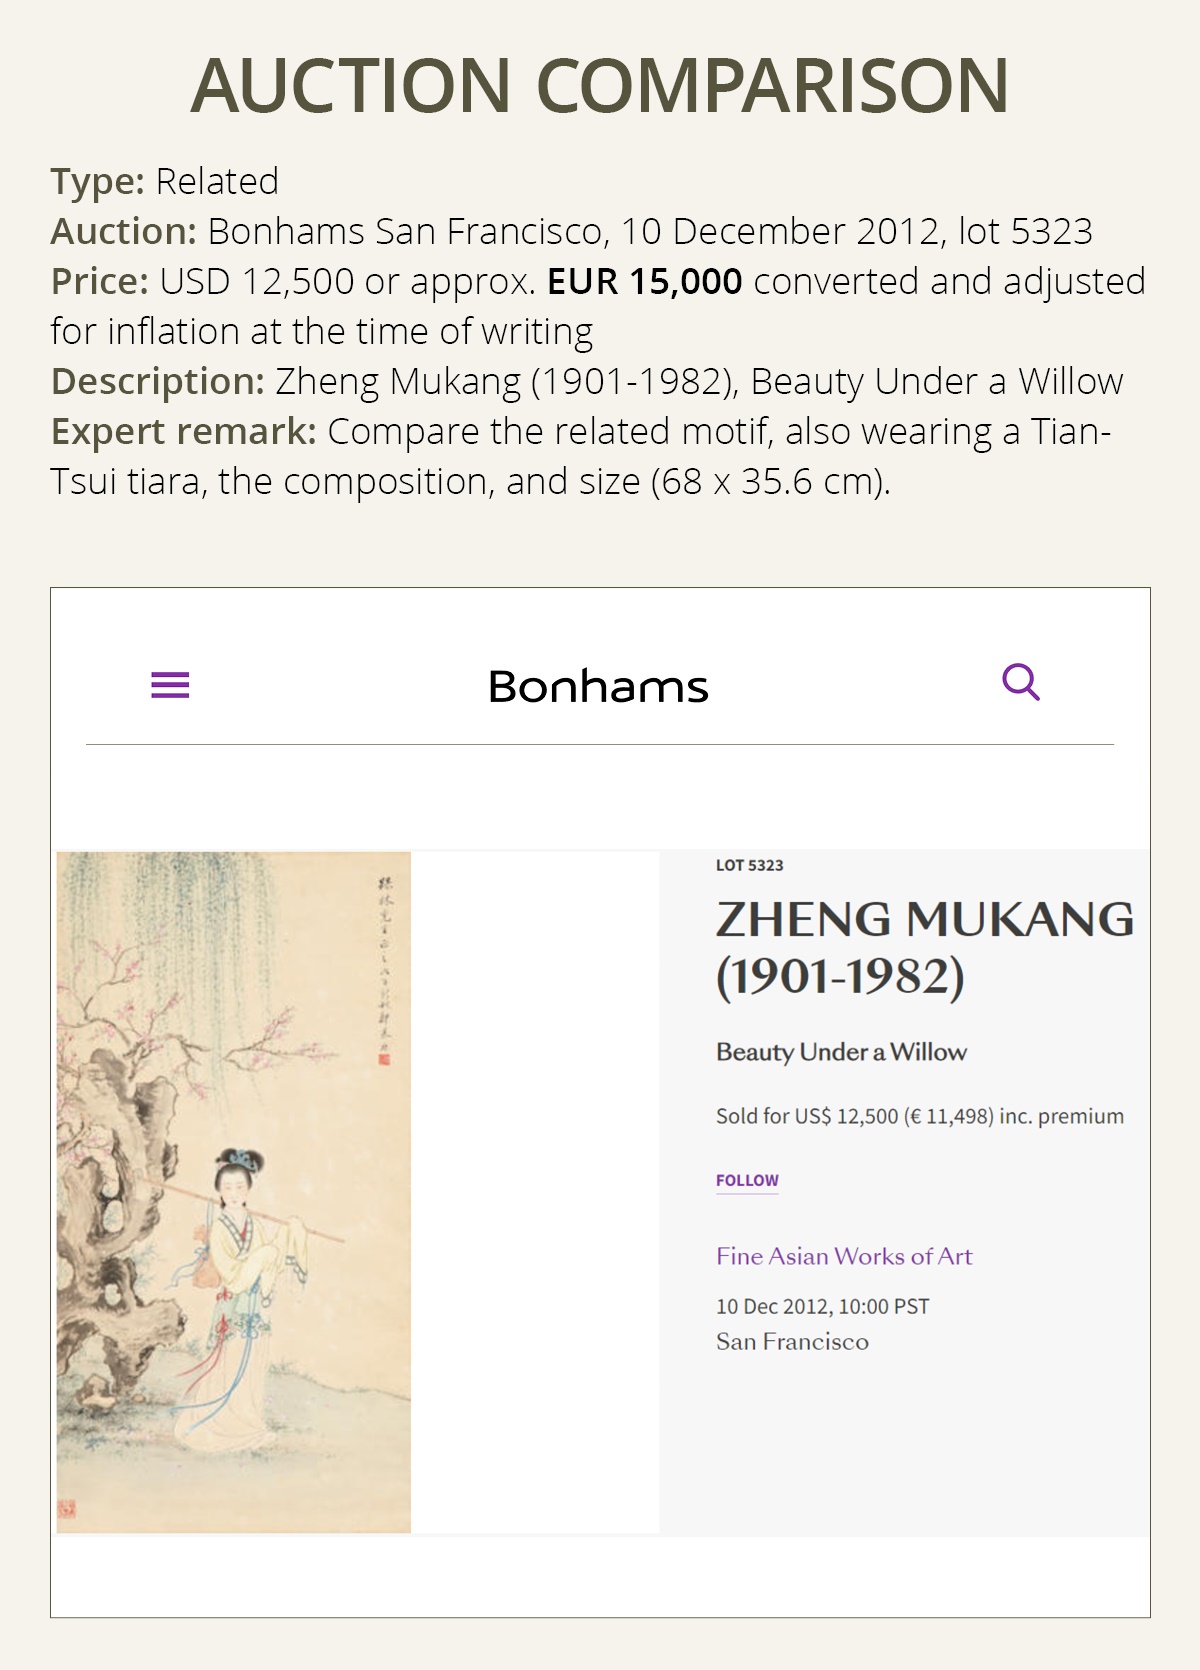 BEAUTY IN A GARDEN, WEARING A TIAN-TSUI TIARA', ZHENG MUKANG (1901-1982), DATED 1941 - Image 5 of 9